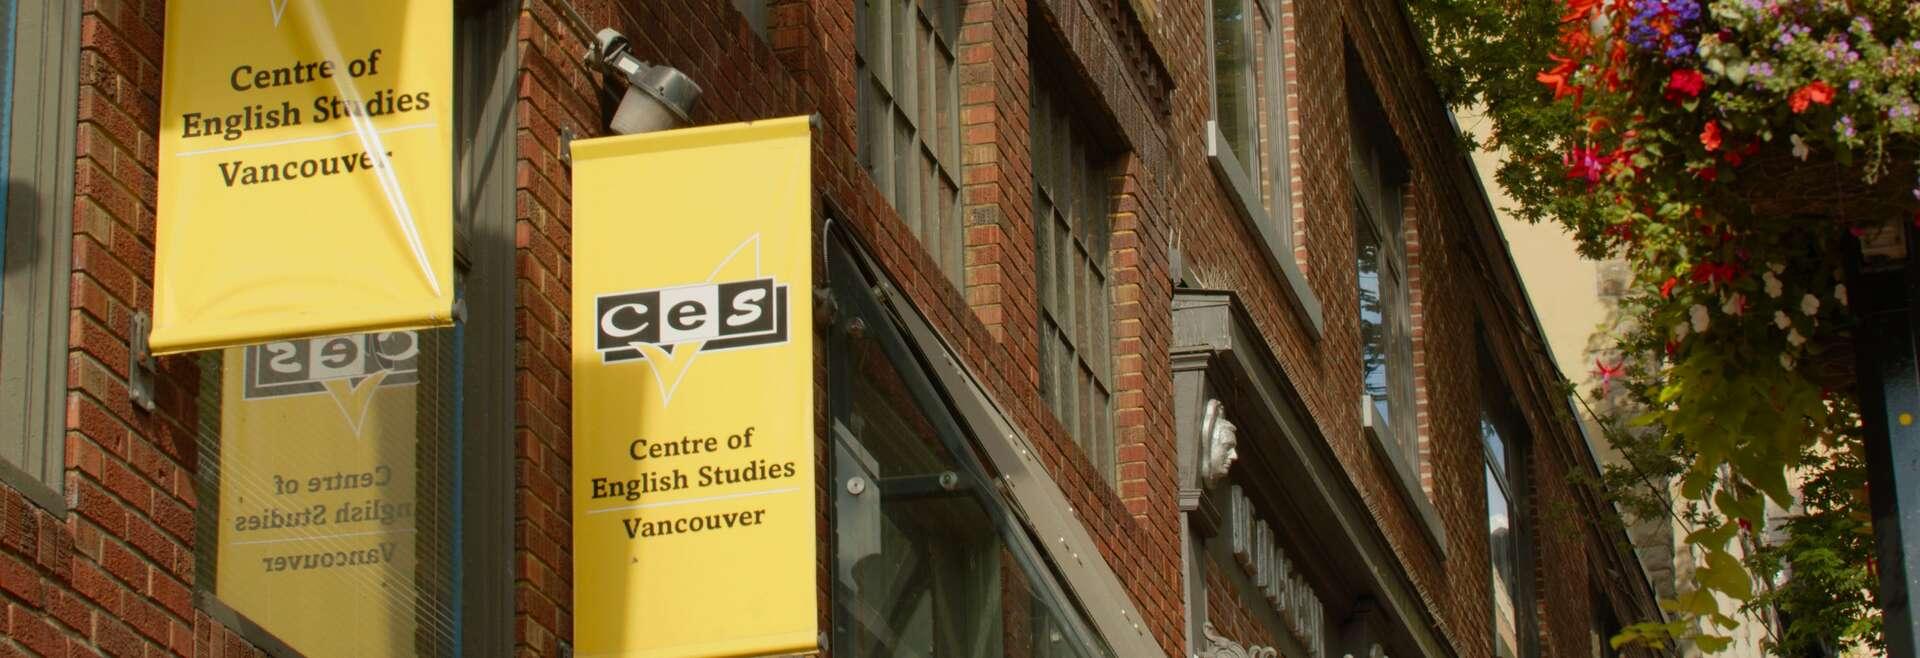 Séjour linguistique Canada, CES Vancouver, Bâtiment scolaire